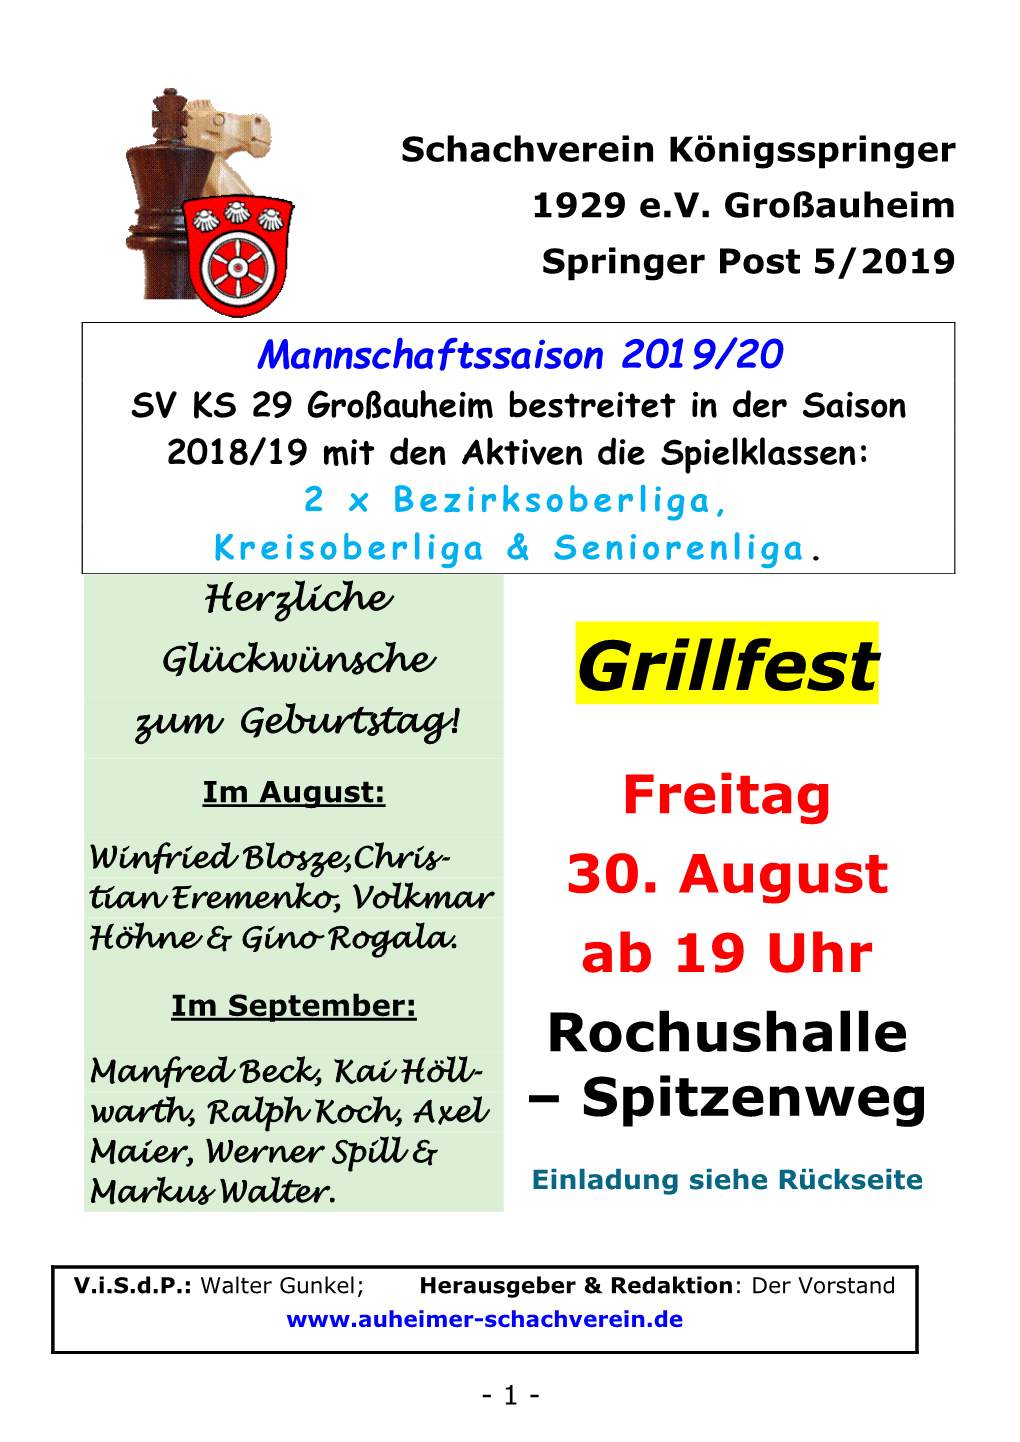 Grillfest Zum Geburtstag! Im August: Freitag Winfried Blosze,Chris- Tian Eremenko, Volkmar 30